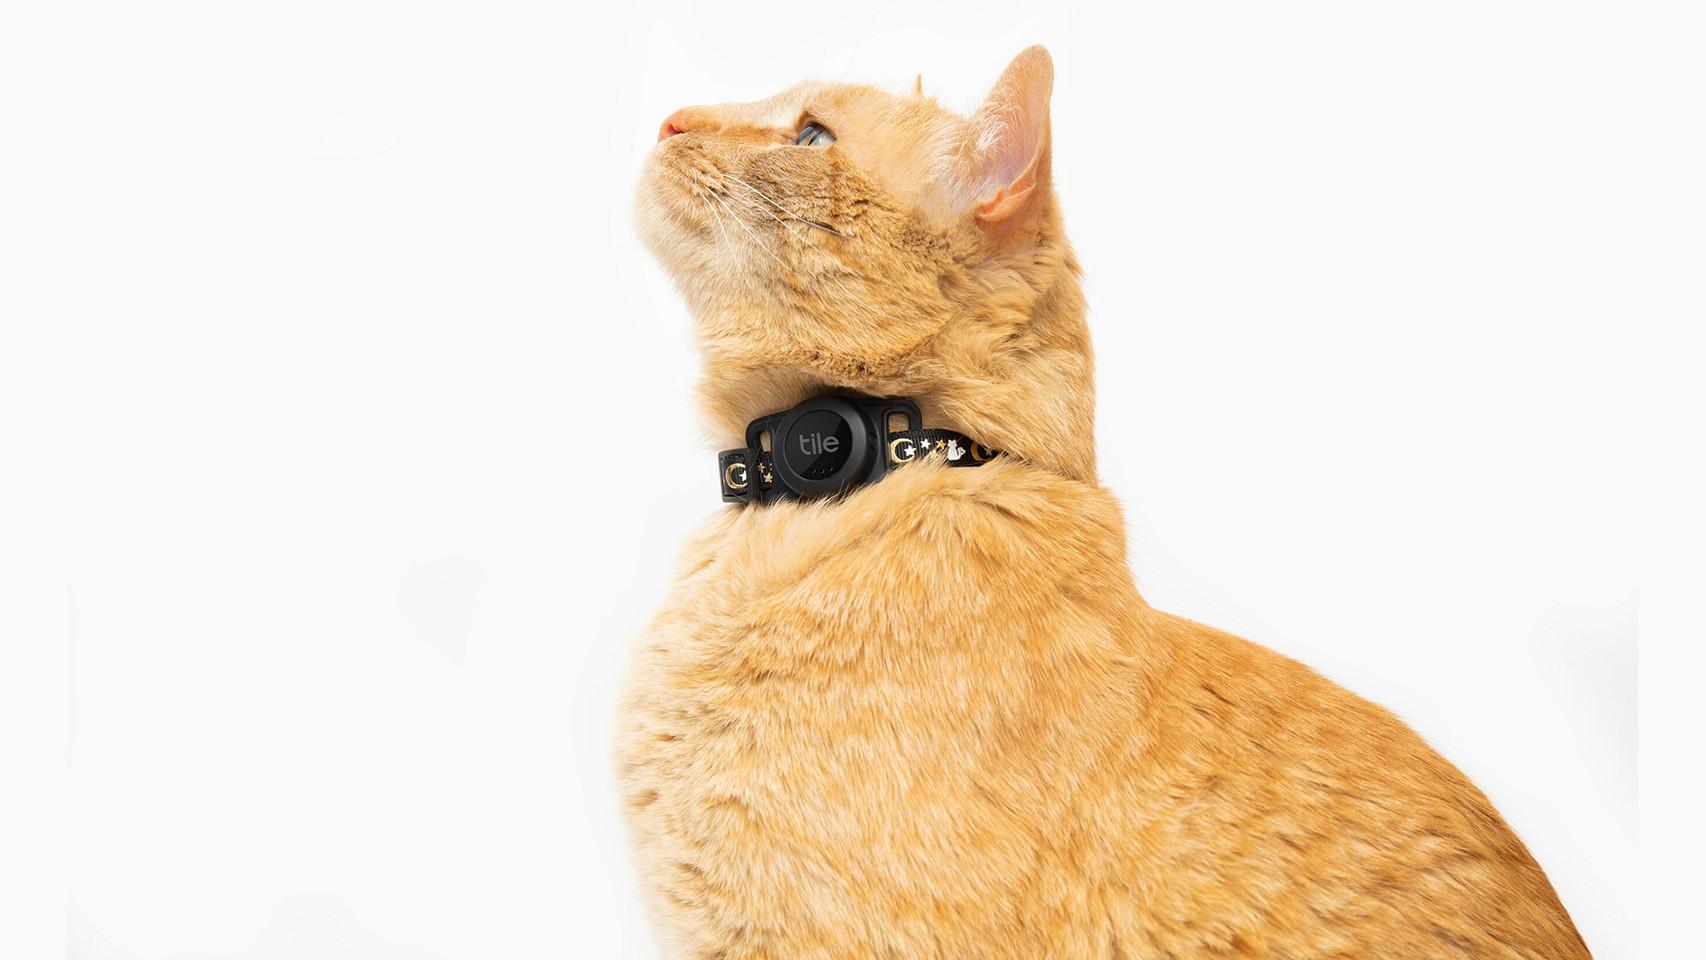 Cámaras de vigilancia y GPS para perros y gatos